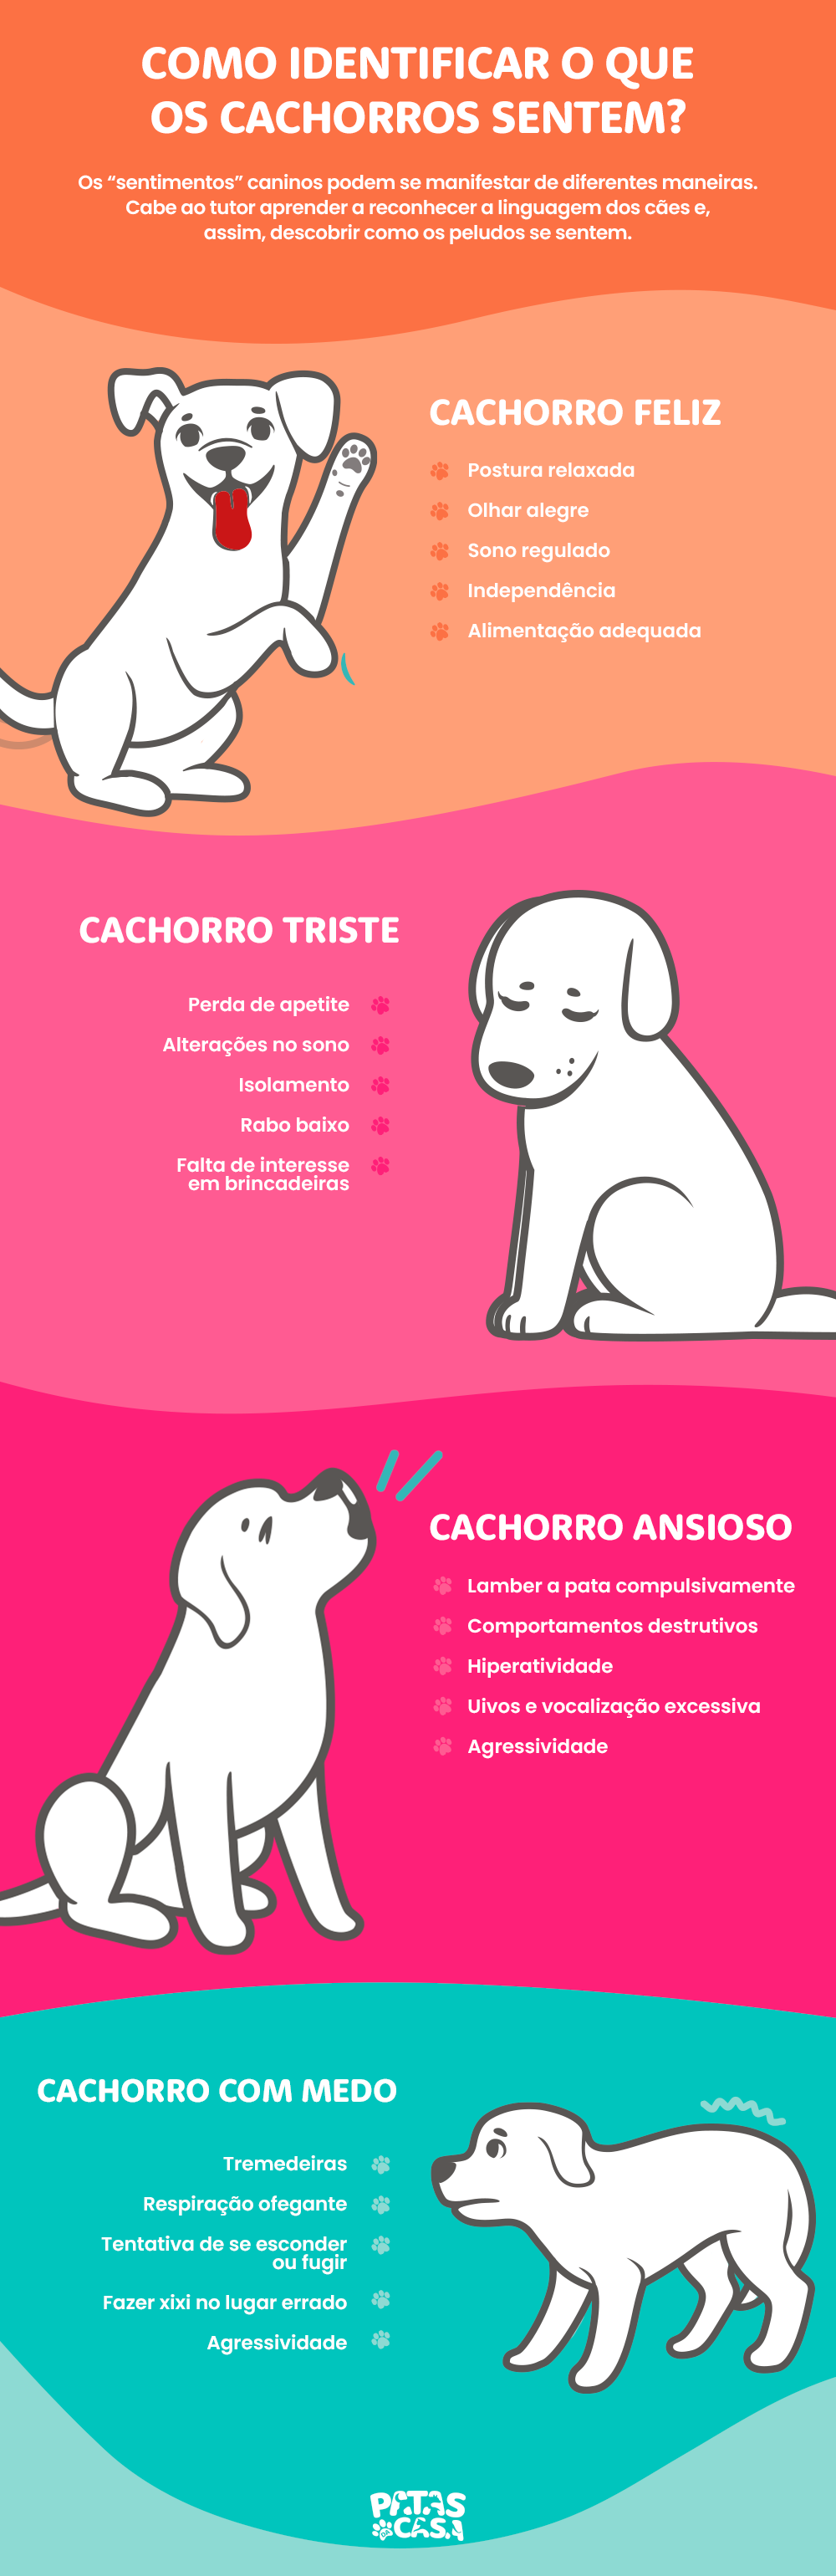 Bloco informativo mostrando os sinais mais evidentes de um cachorro feliz, triste, ansioso ou com medo